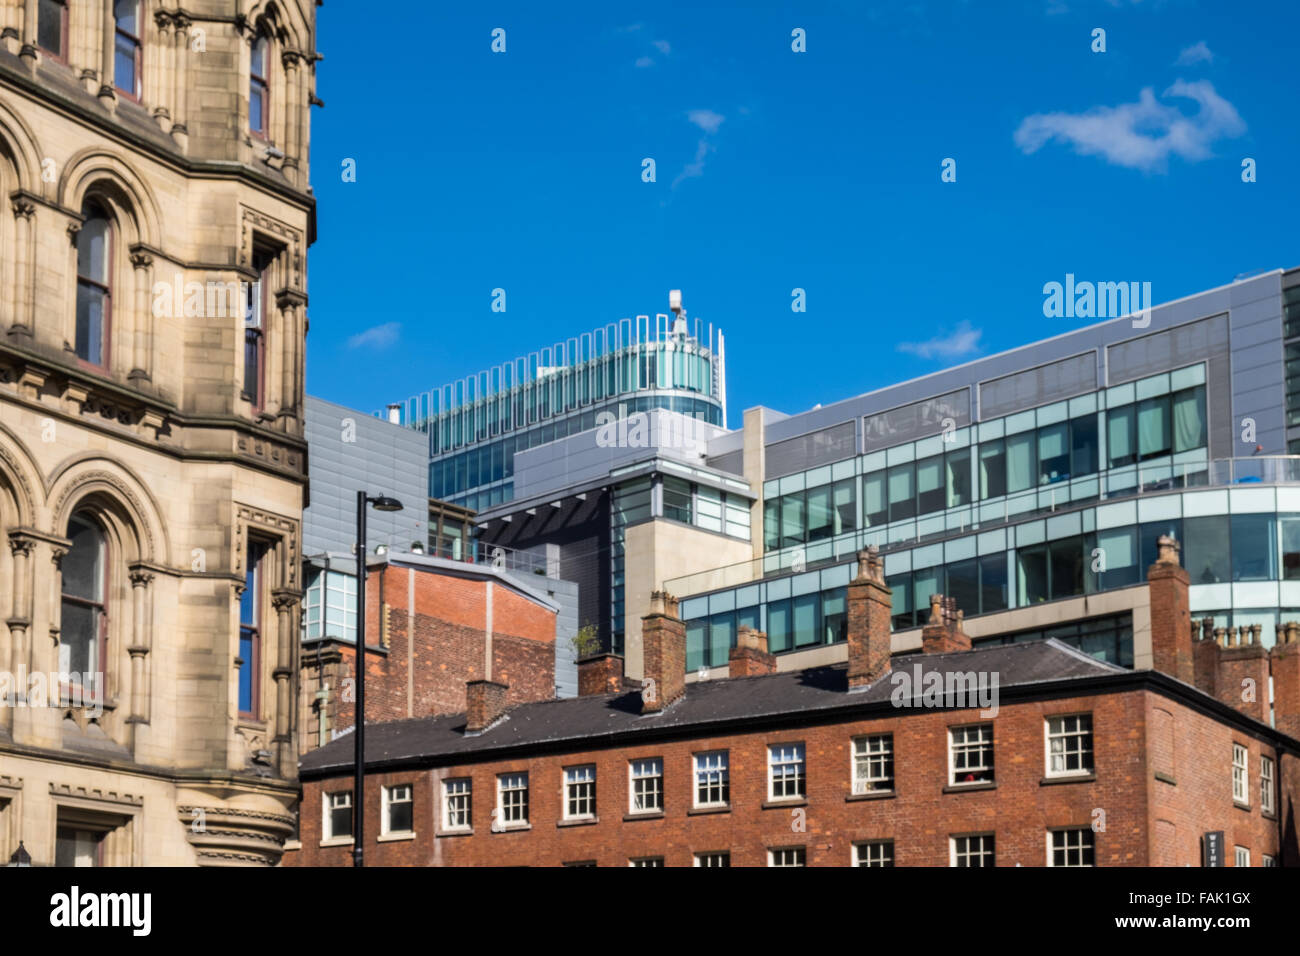 Kontraste in der Architektur im Stadtzentrum von Manchester, Manchester, UK. Stockfoto